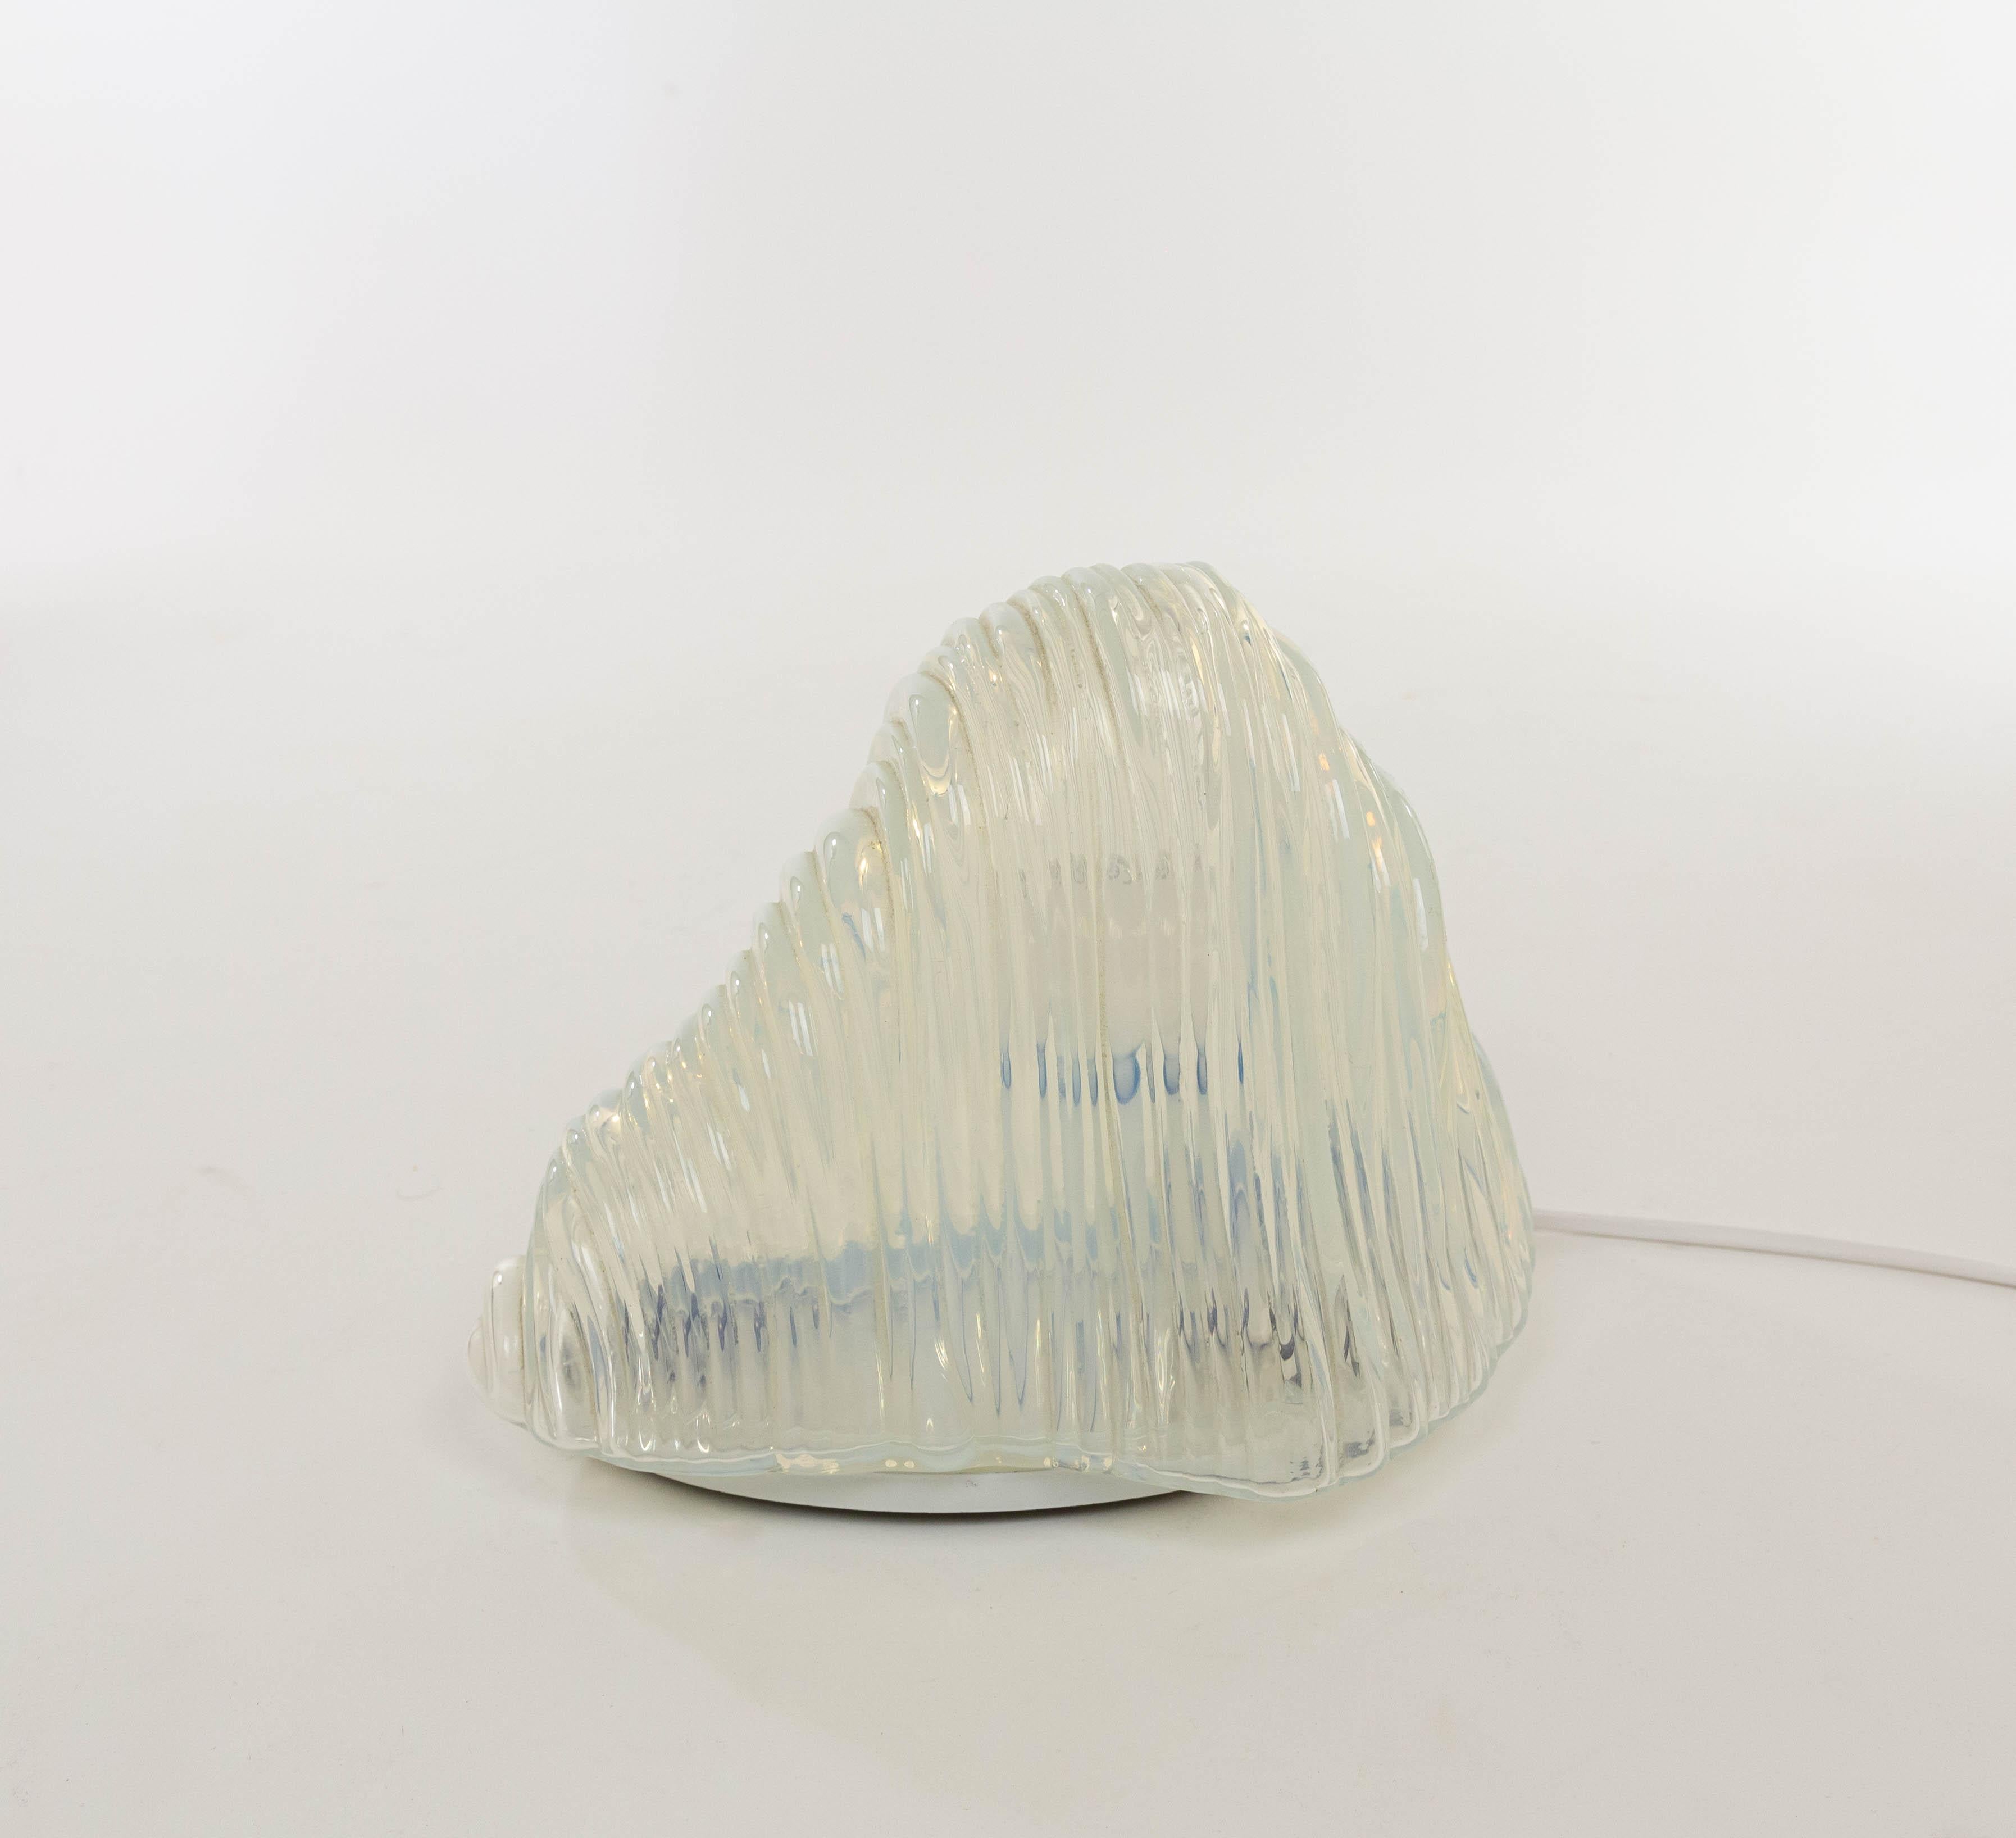 Lampe de table Iceberg originale ou modèle LT 301 conçue par Carlo Nason dans les années 1960 pour A.V. Mazzega.

Cette lampe de table est fabriquée en verre Murano incurvé qui offre un merveilleux effet de lumière. La base en métal laqué comprend